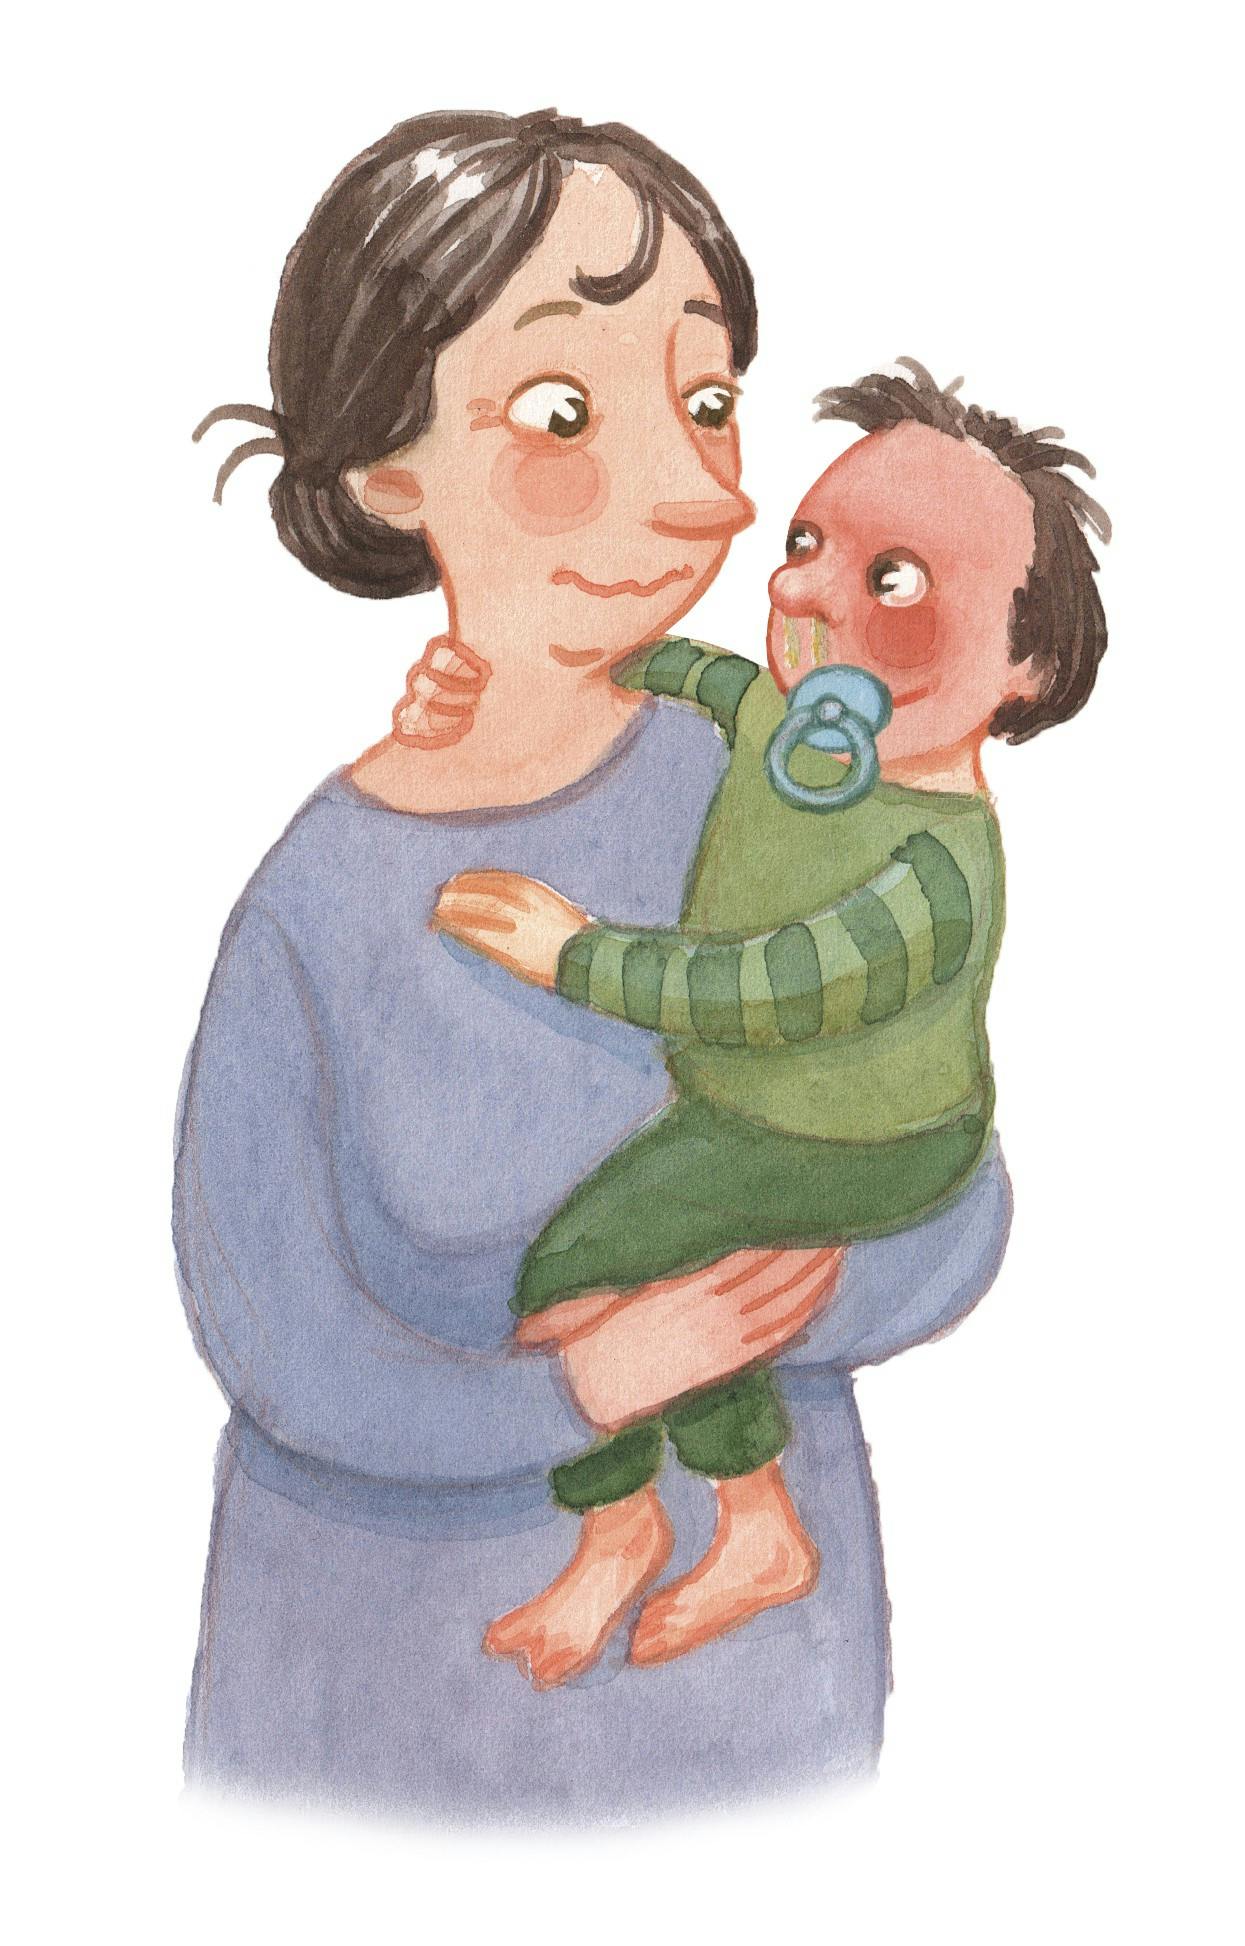 Kvinde holder en baby